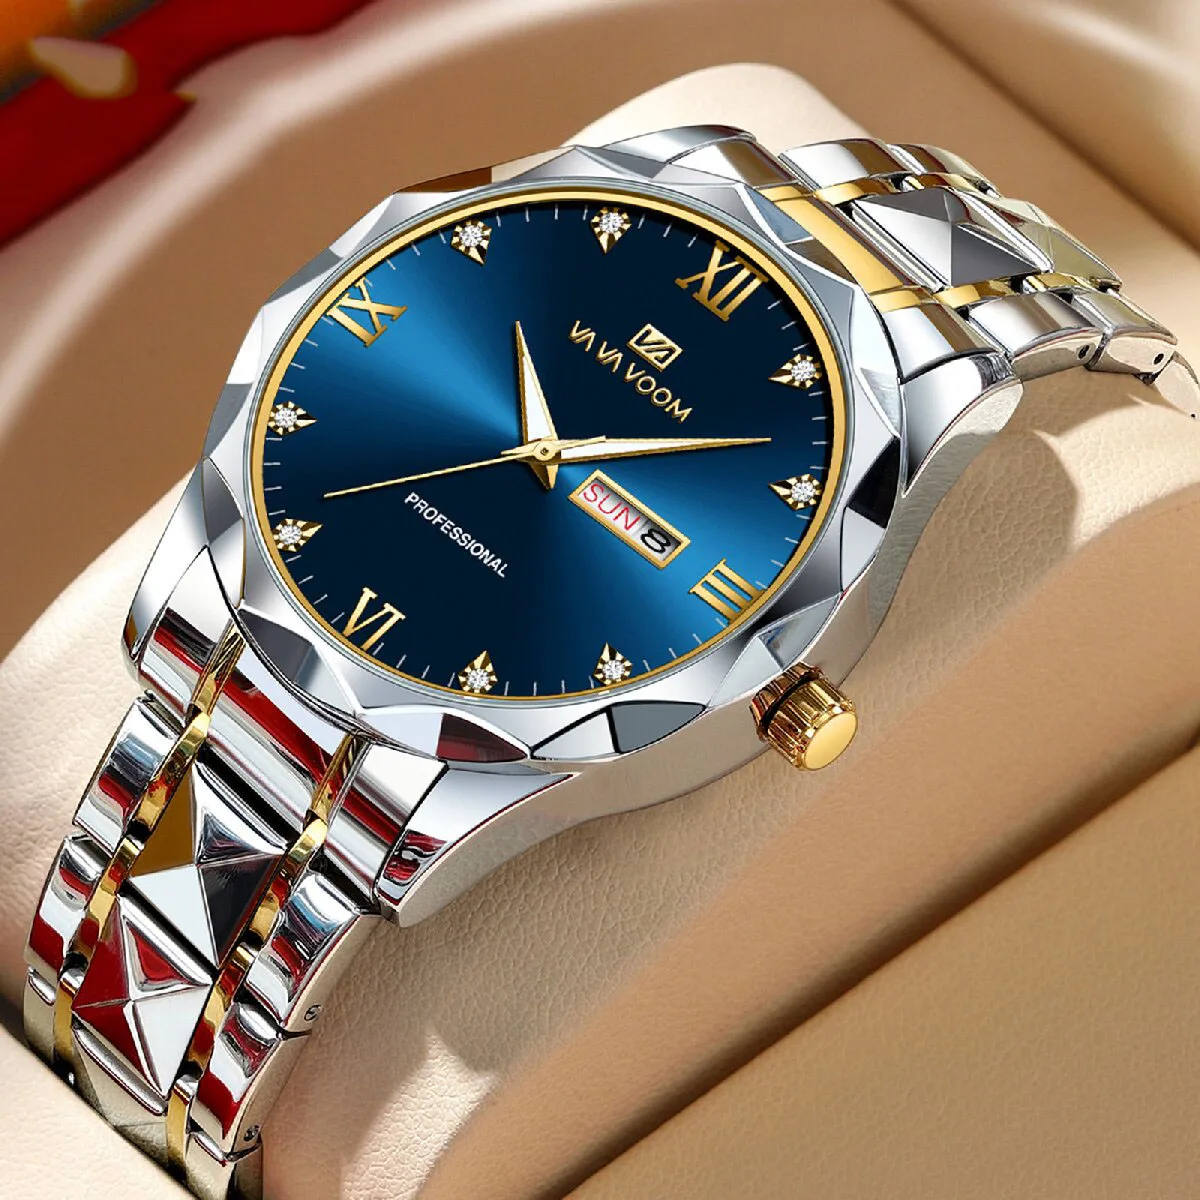 

Waterproof Precision Steel Band Men's Watch New Quartz Watch Calendar Business Blue Room Gold Watch Men's Watch